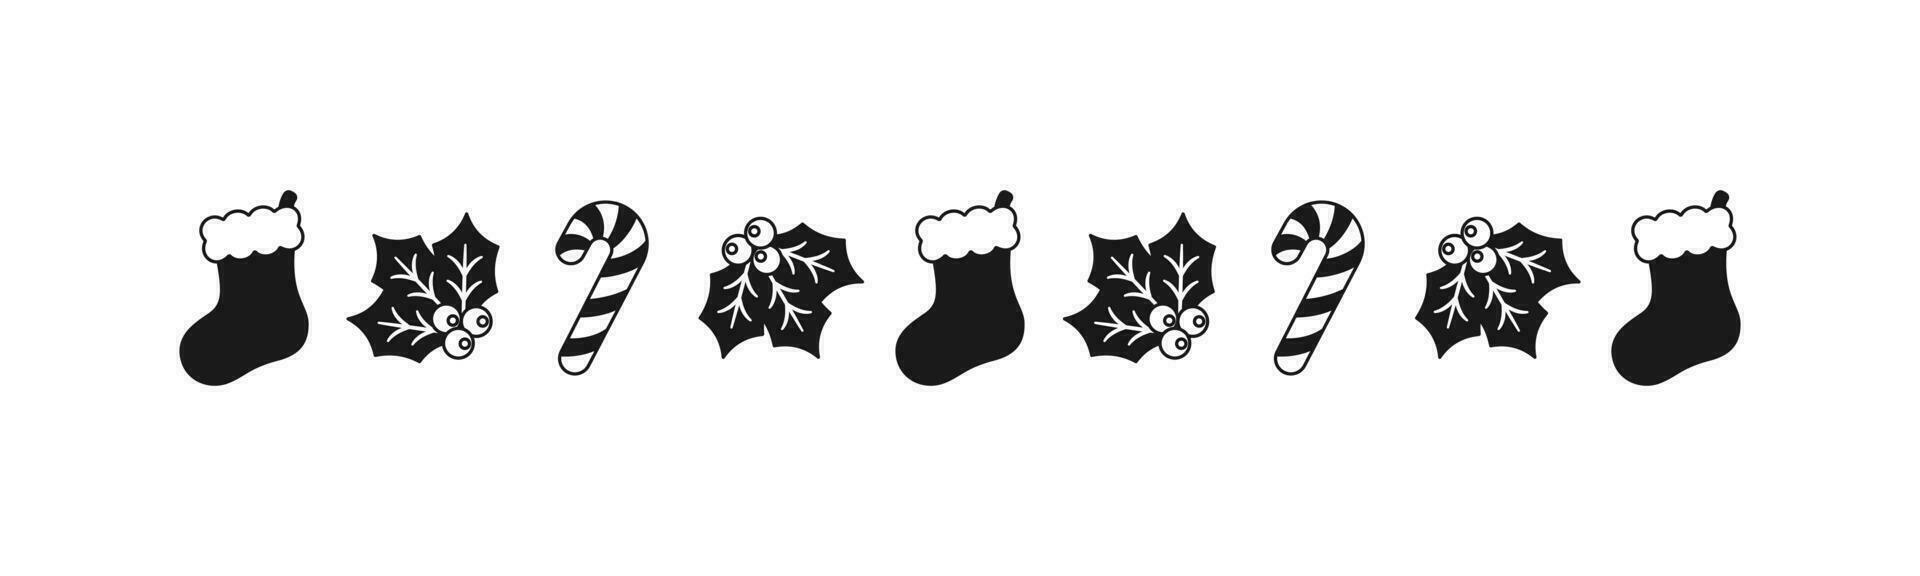 Noël à thème décoratif frontière et texte séparateur, Noël stockage, bonbons canne et du gui modèle silhouette. vecteur illustration.